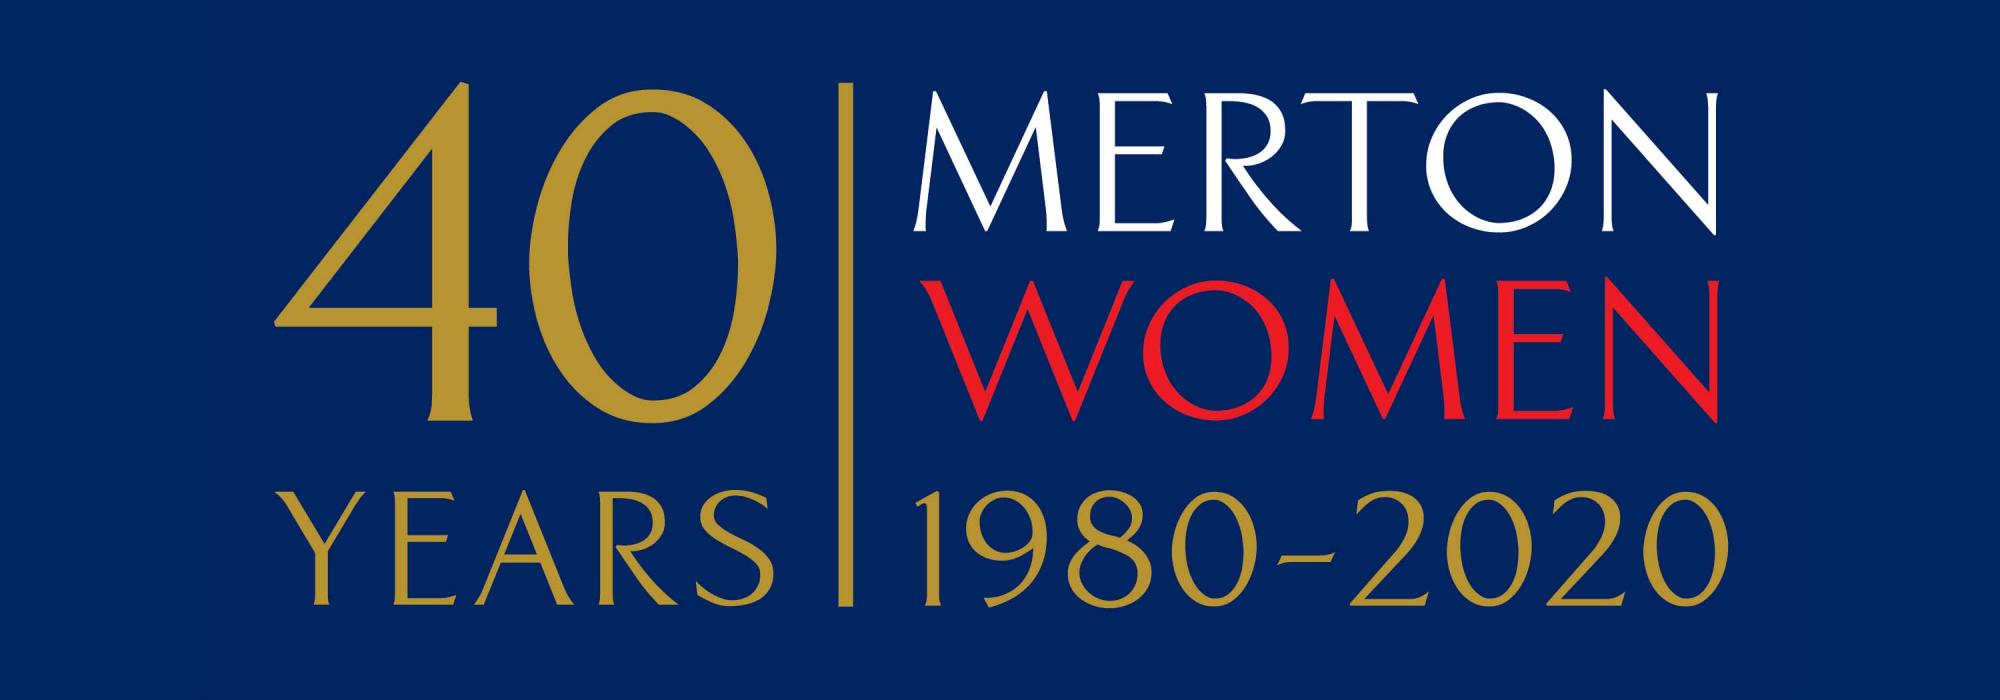 40 Years: Merton Women 1980-2020